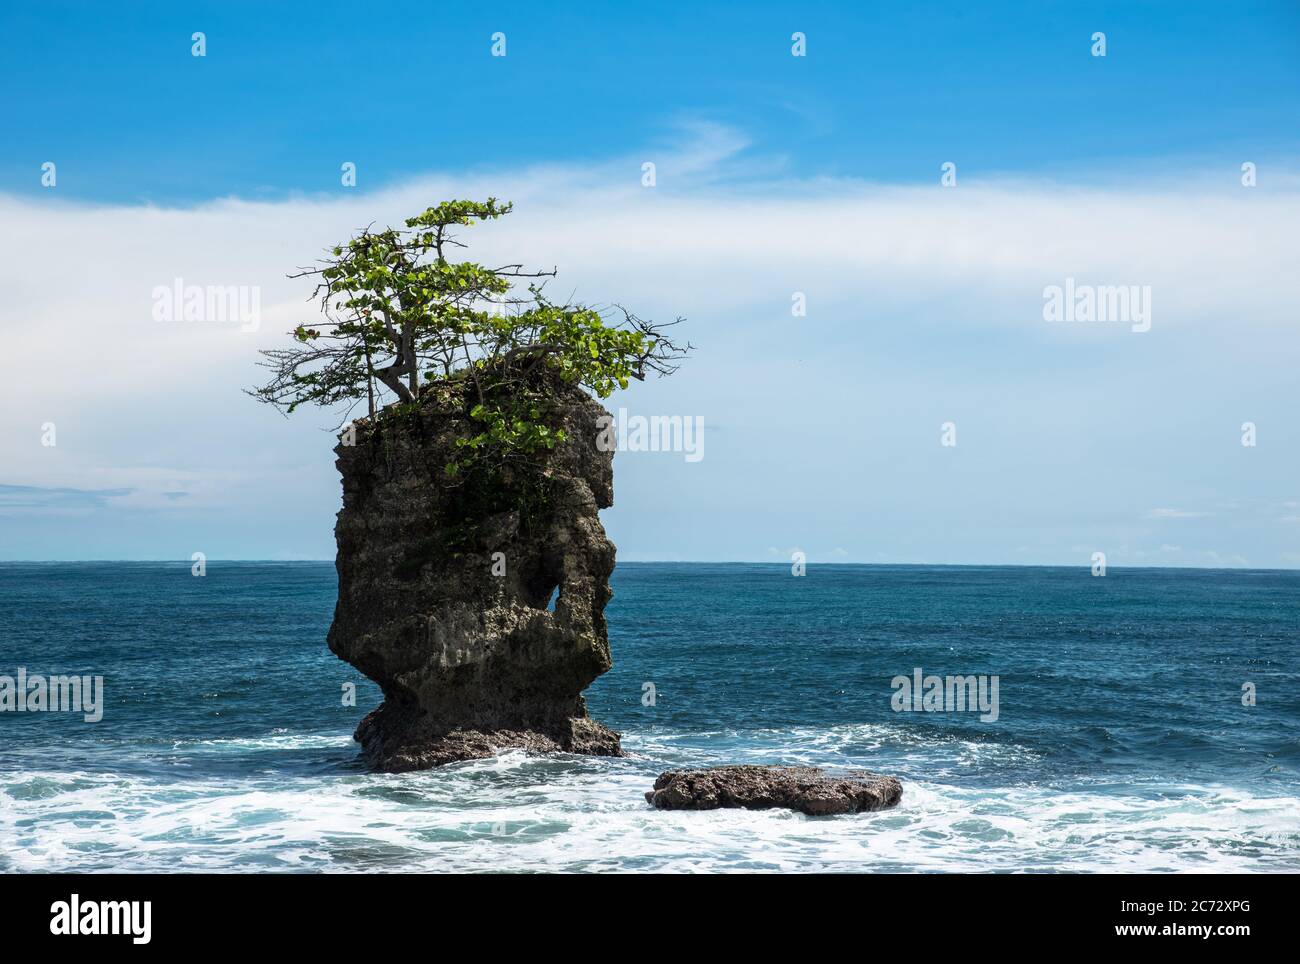 Lonely Rock, Cliff Stone Formation mit Einzelbaum, Costa Rica refugio Manzanillo, Karibisches Meer, Lateinamerika, schöne kleine Insel Stockfoto